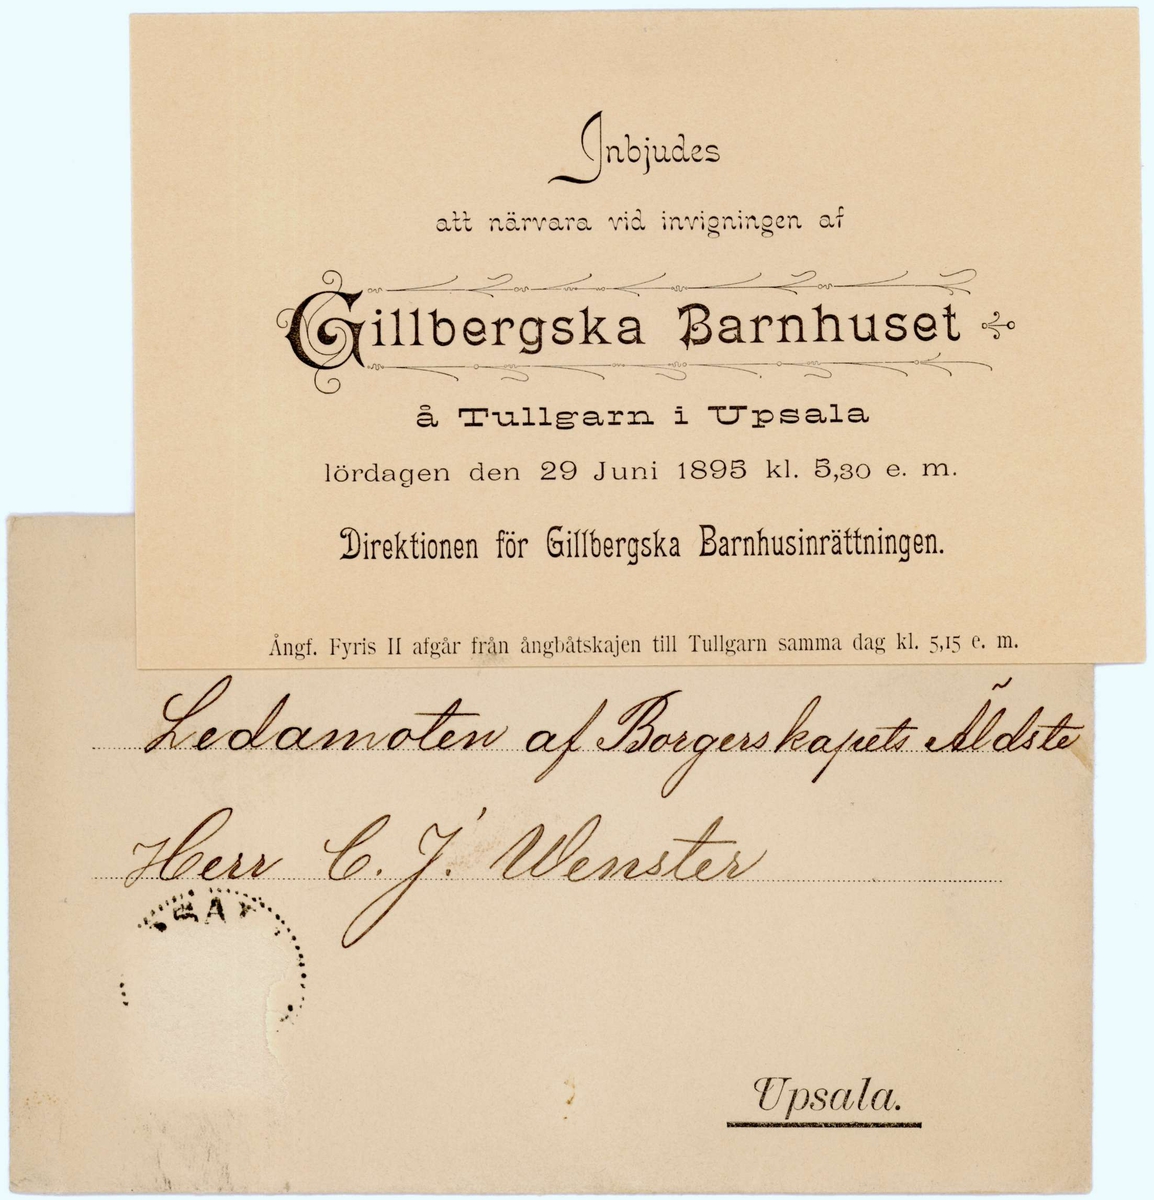 Nio inbjudningskort och inträdeskort från åren 1887-1904.